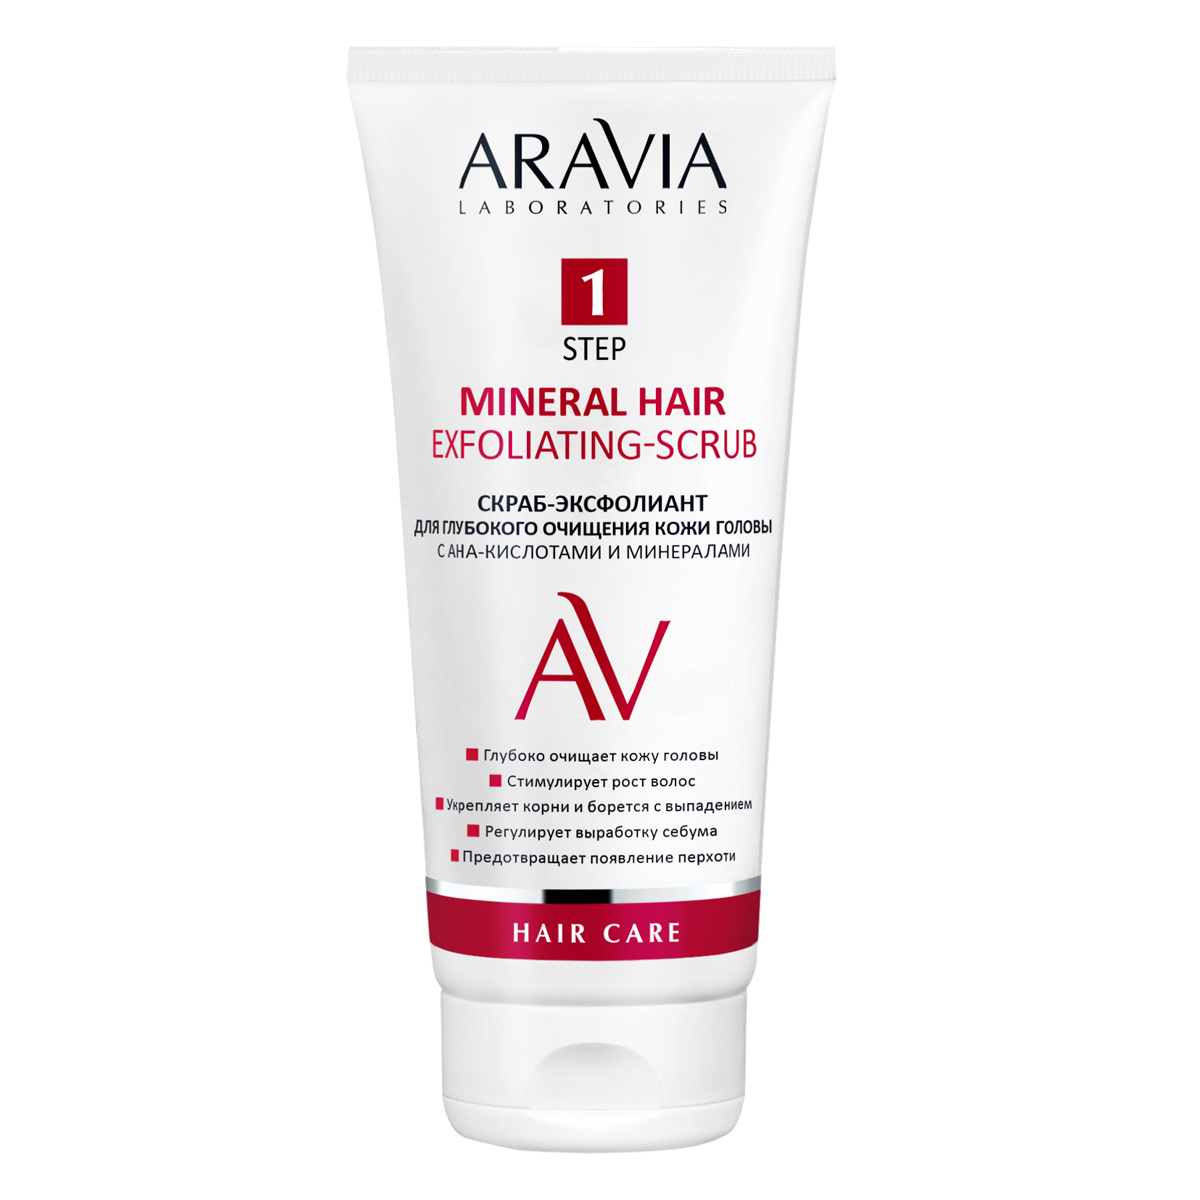 Aravia Laboratories Скраб-эксфолиант для глубокого очищения кожи головы с АНА-кислотами и минералами Mineral Hair Exfoliating-Scrub, 200 мл (Aravia Laboratories, Уход за волосами)